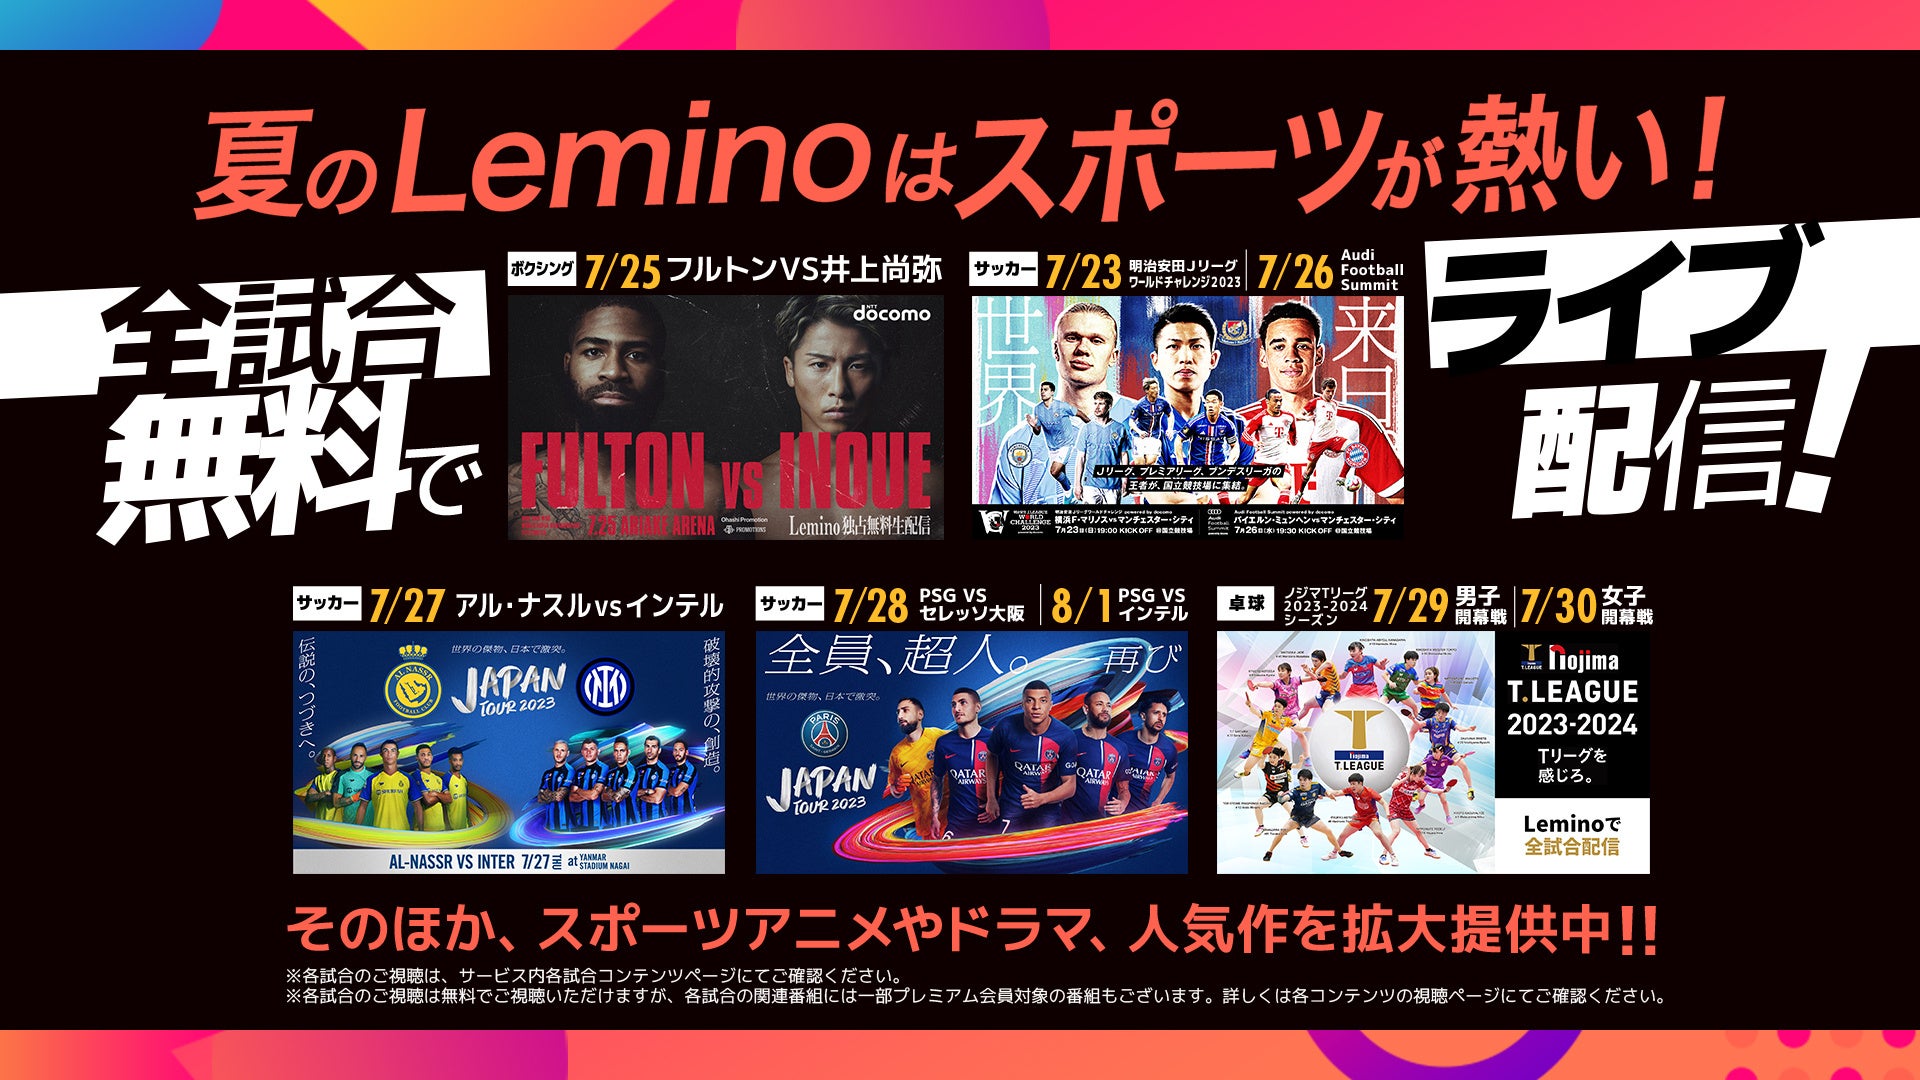 夏のLeminoはスポーツが熱い！井上尚弥の新たなる挑戦も！世界の強豪サッカークラブによる夢の戦いも！日本最高峰の卓球リーグも！世界トップレベルの試合をLeminoで観よう！